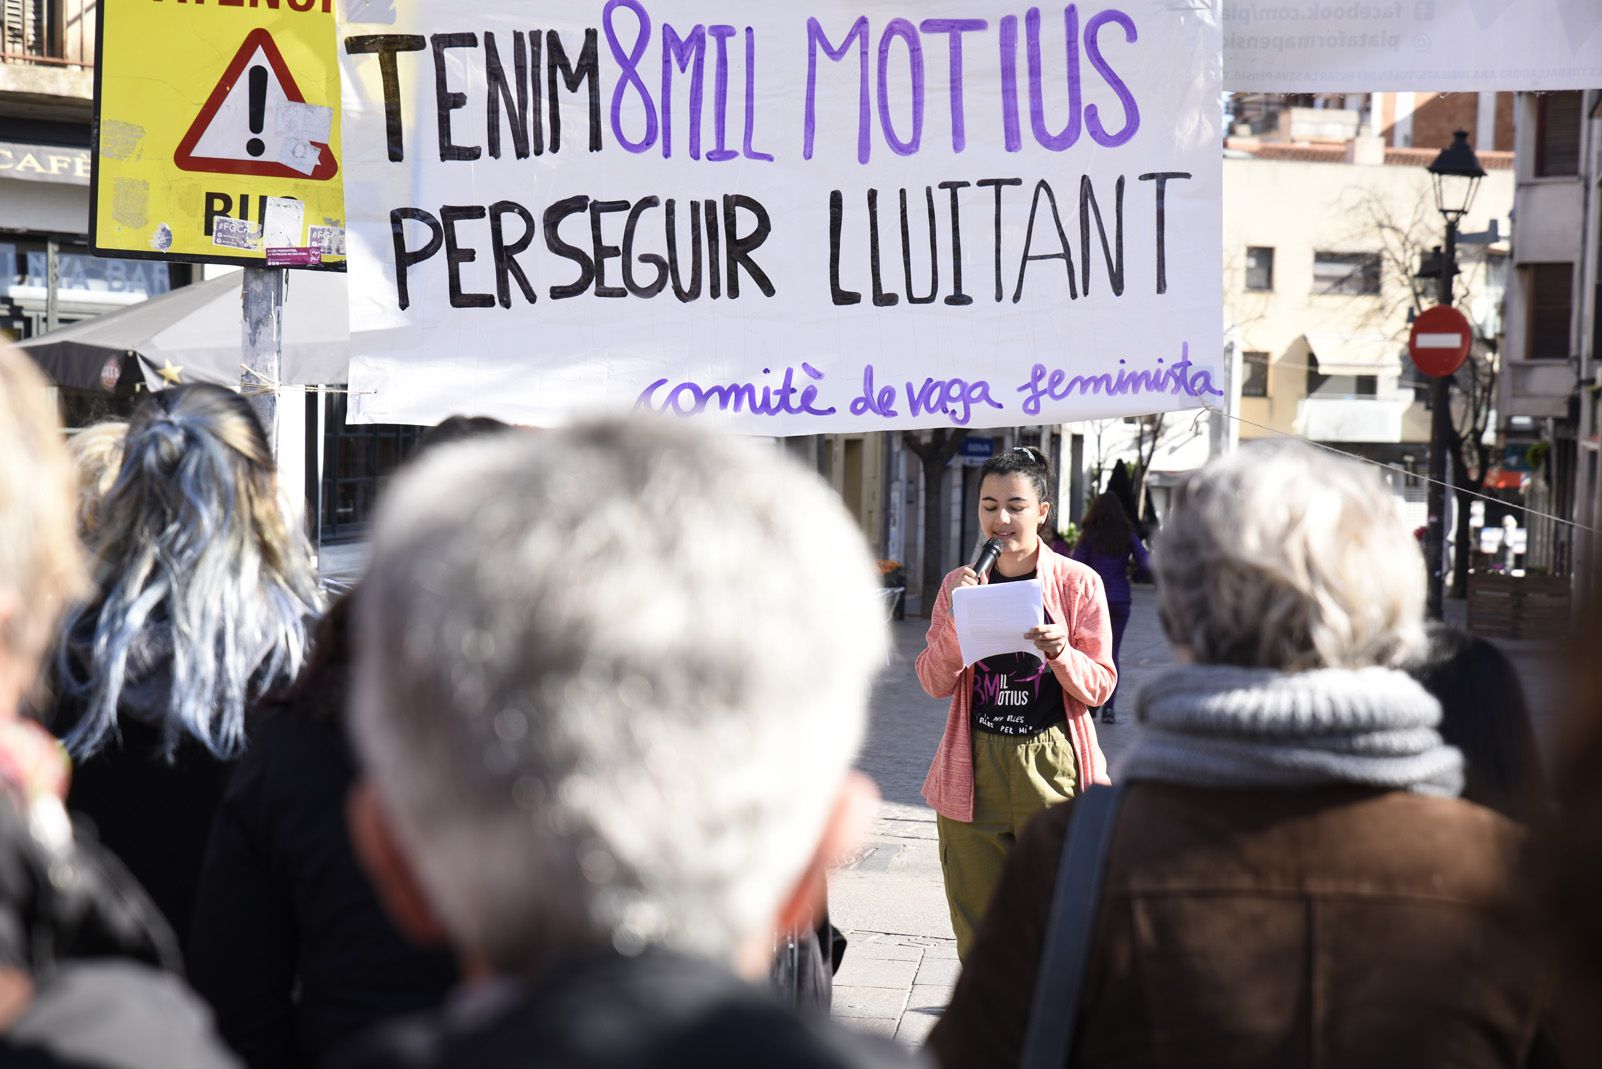 Manifestació "Ens aturem per canviar ho tot Cap pas enrere" Foto: Bernat Millet.